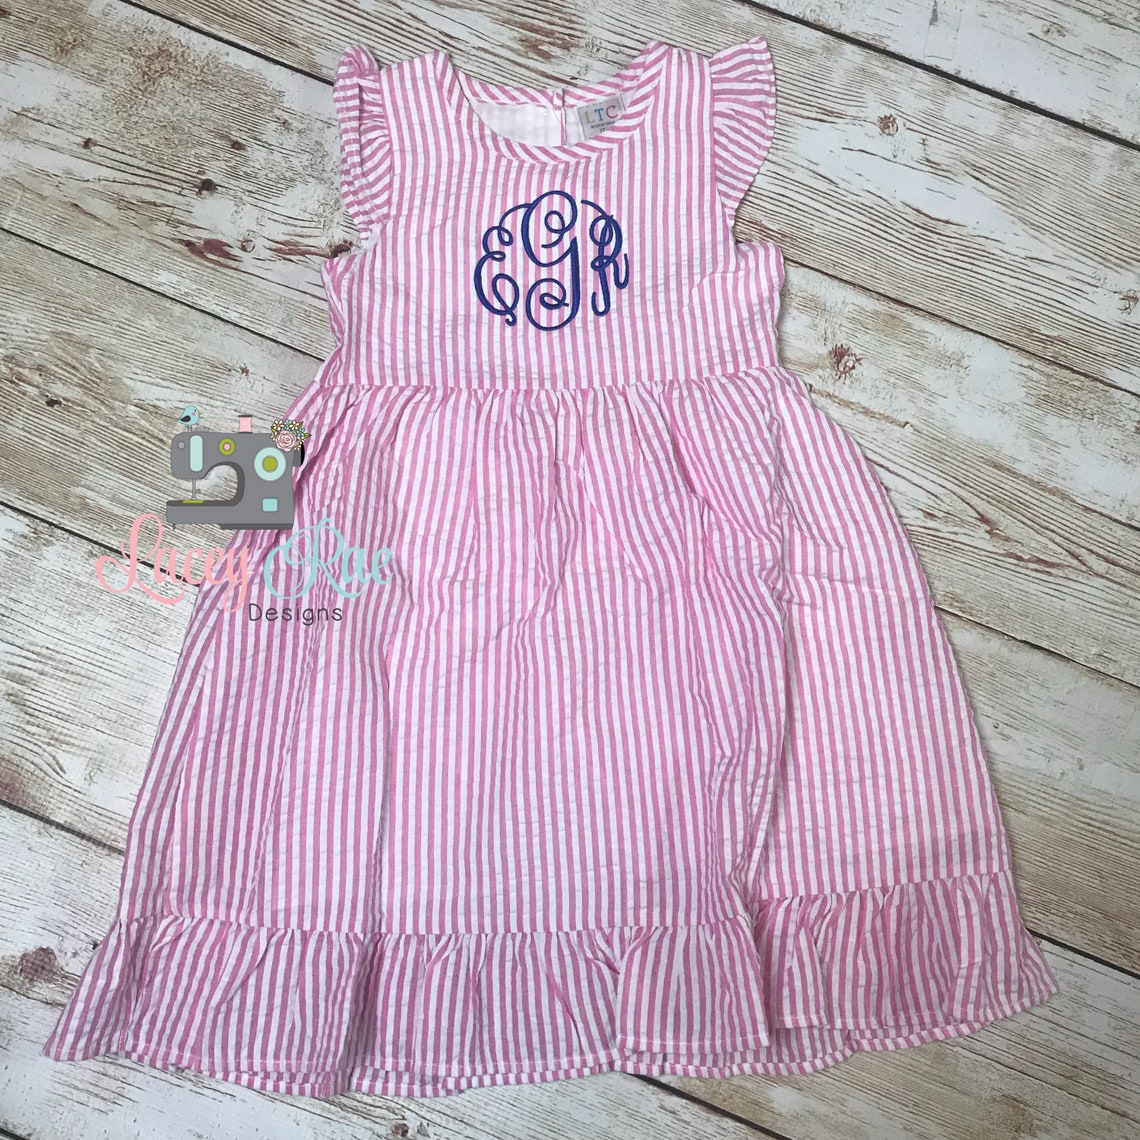 Monogrammed Toddler or little girl Seersucker Easter Dress | Etsy